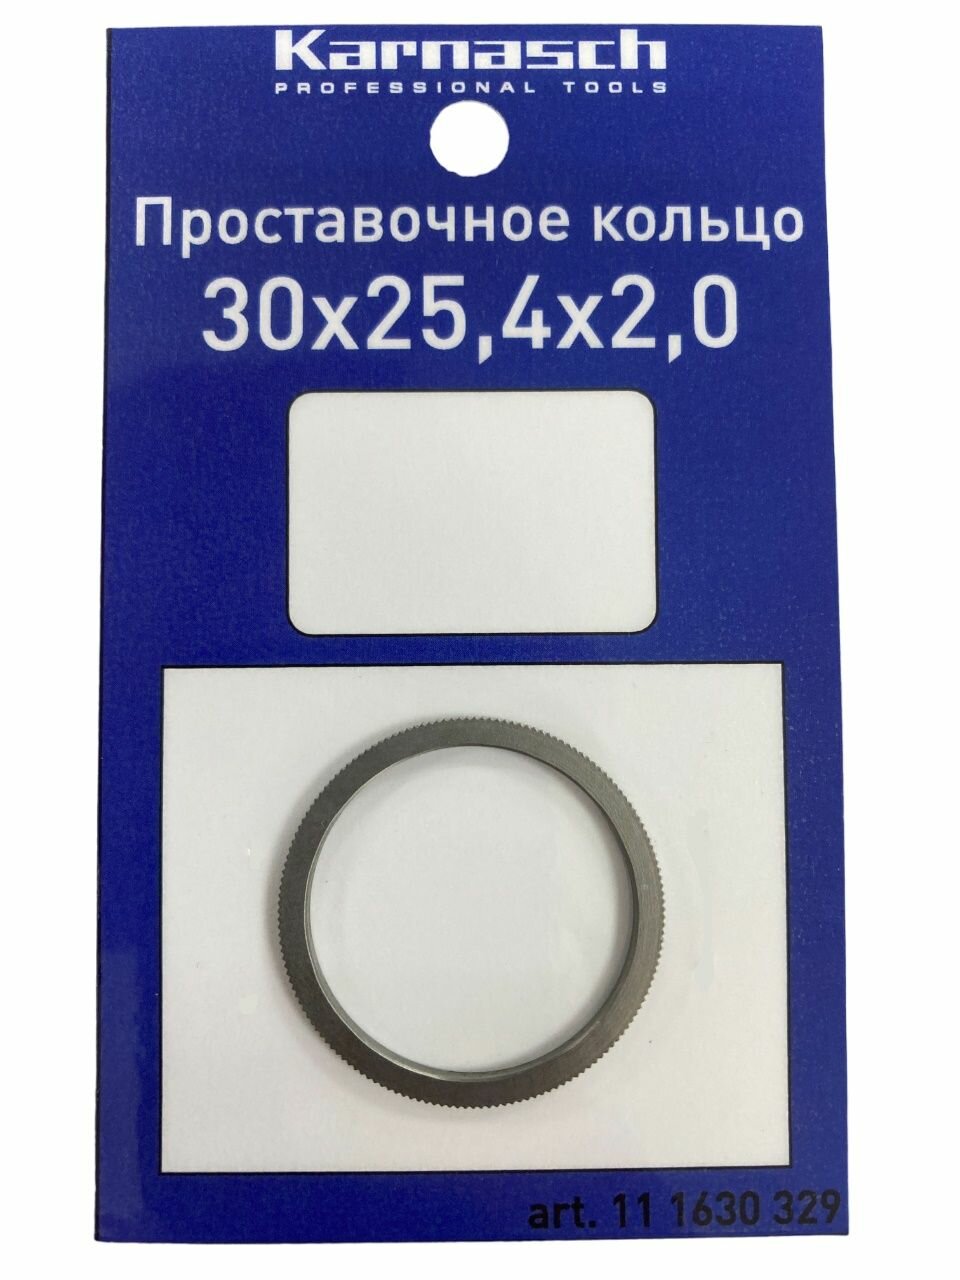 Кольцо переходное (проставочное) для пильных дисков Karnasch 30х25,4х2,0 мм